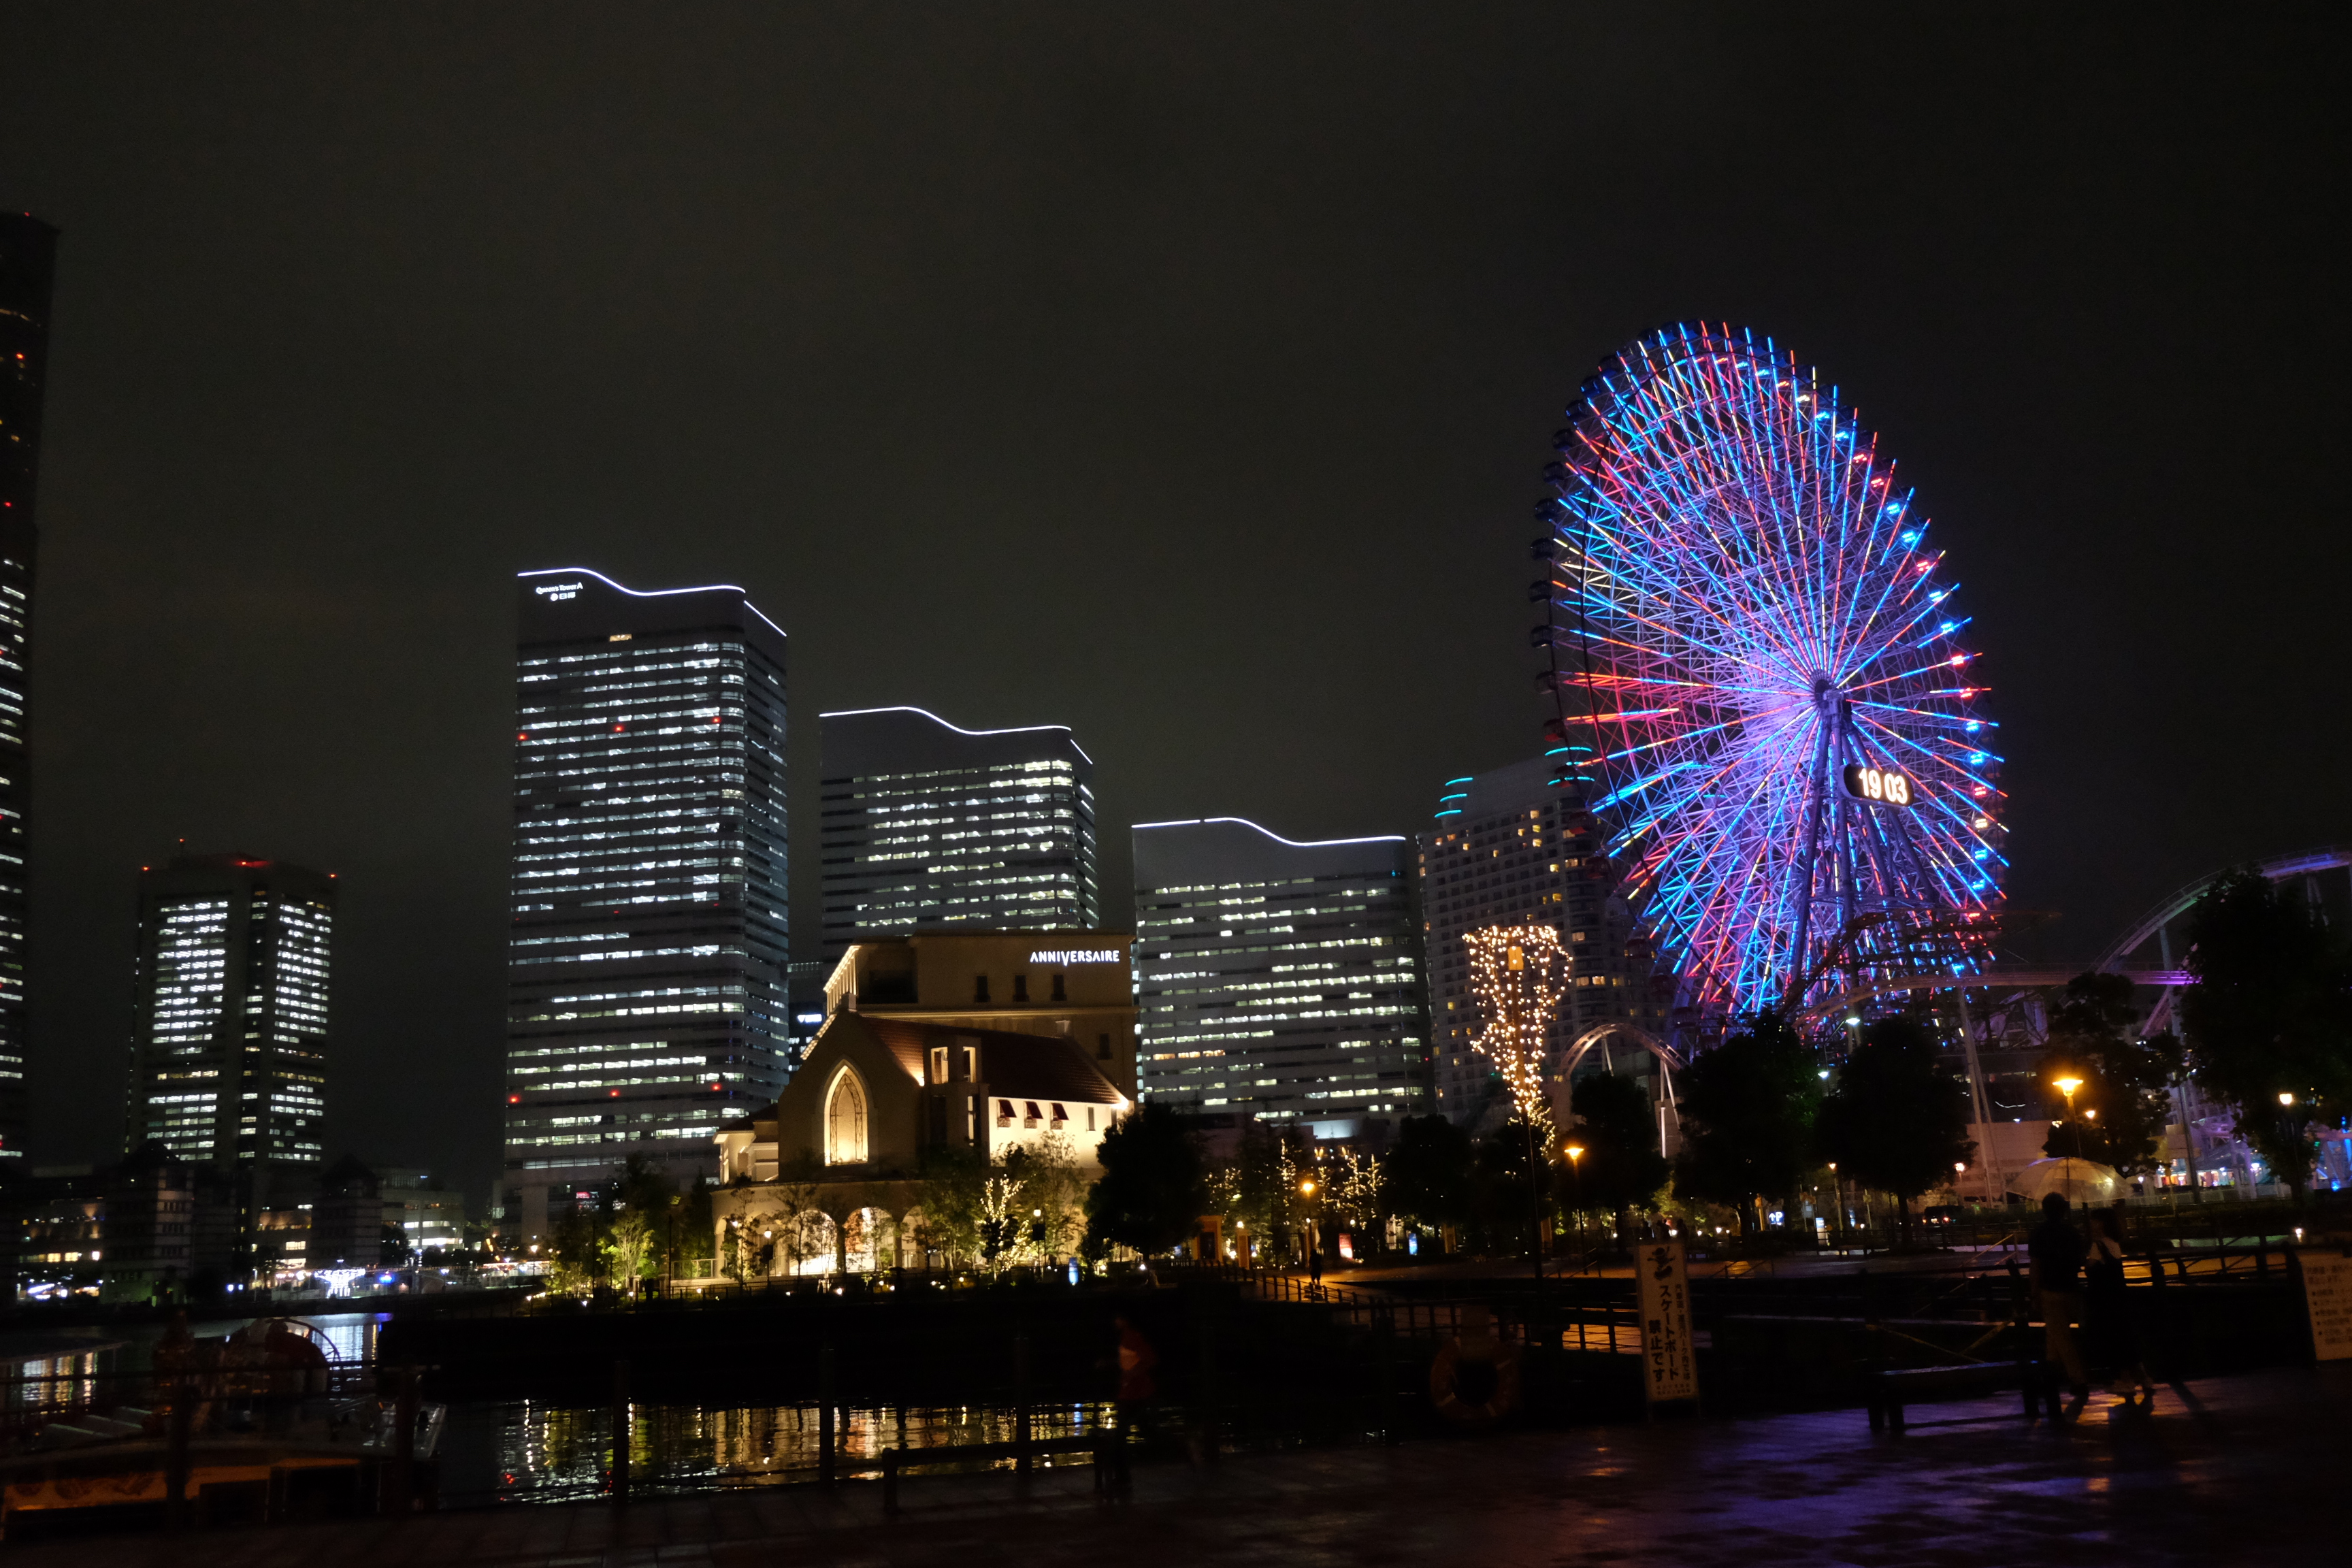 横滨夜景景点 | 专集 | 畅游横滨攻略 - Yokohama Official Visitors' Guide